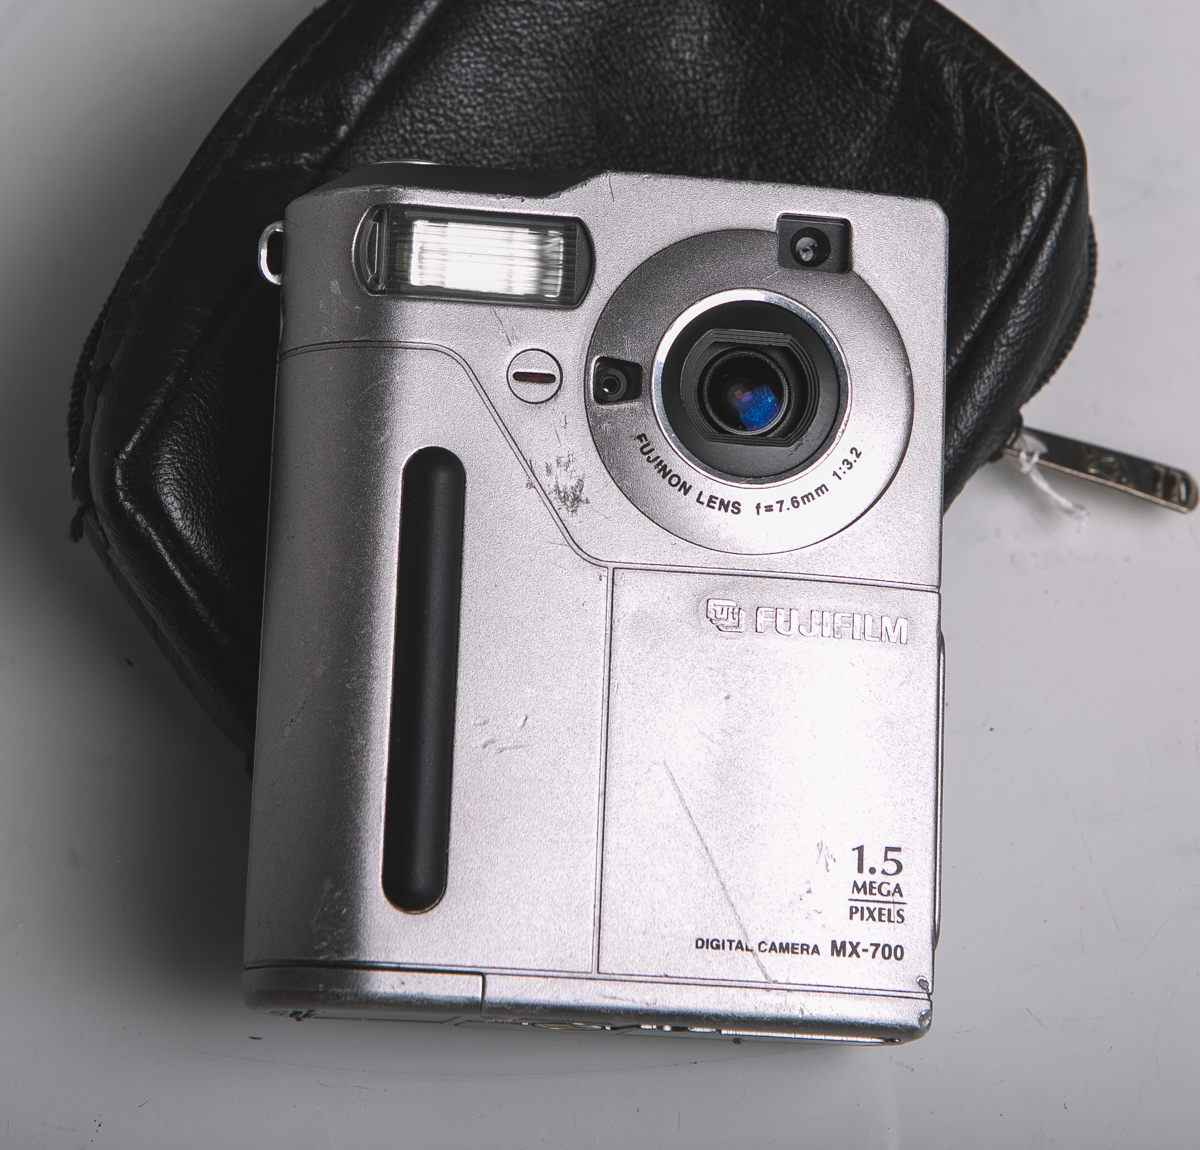 Digitalkamera "MX-700" von Fujifilm, 1.5 - auctions & price archive